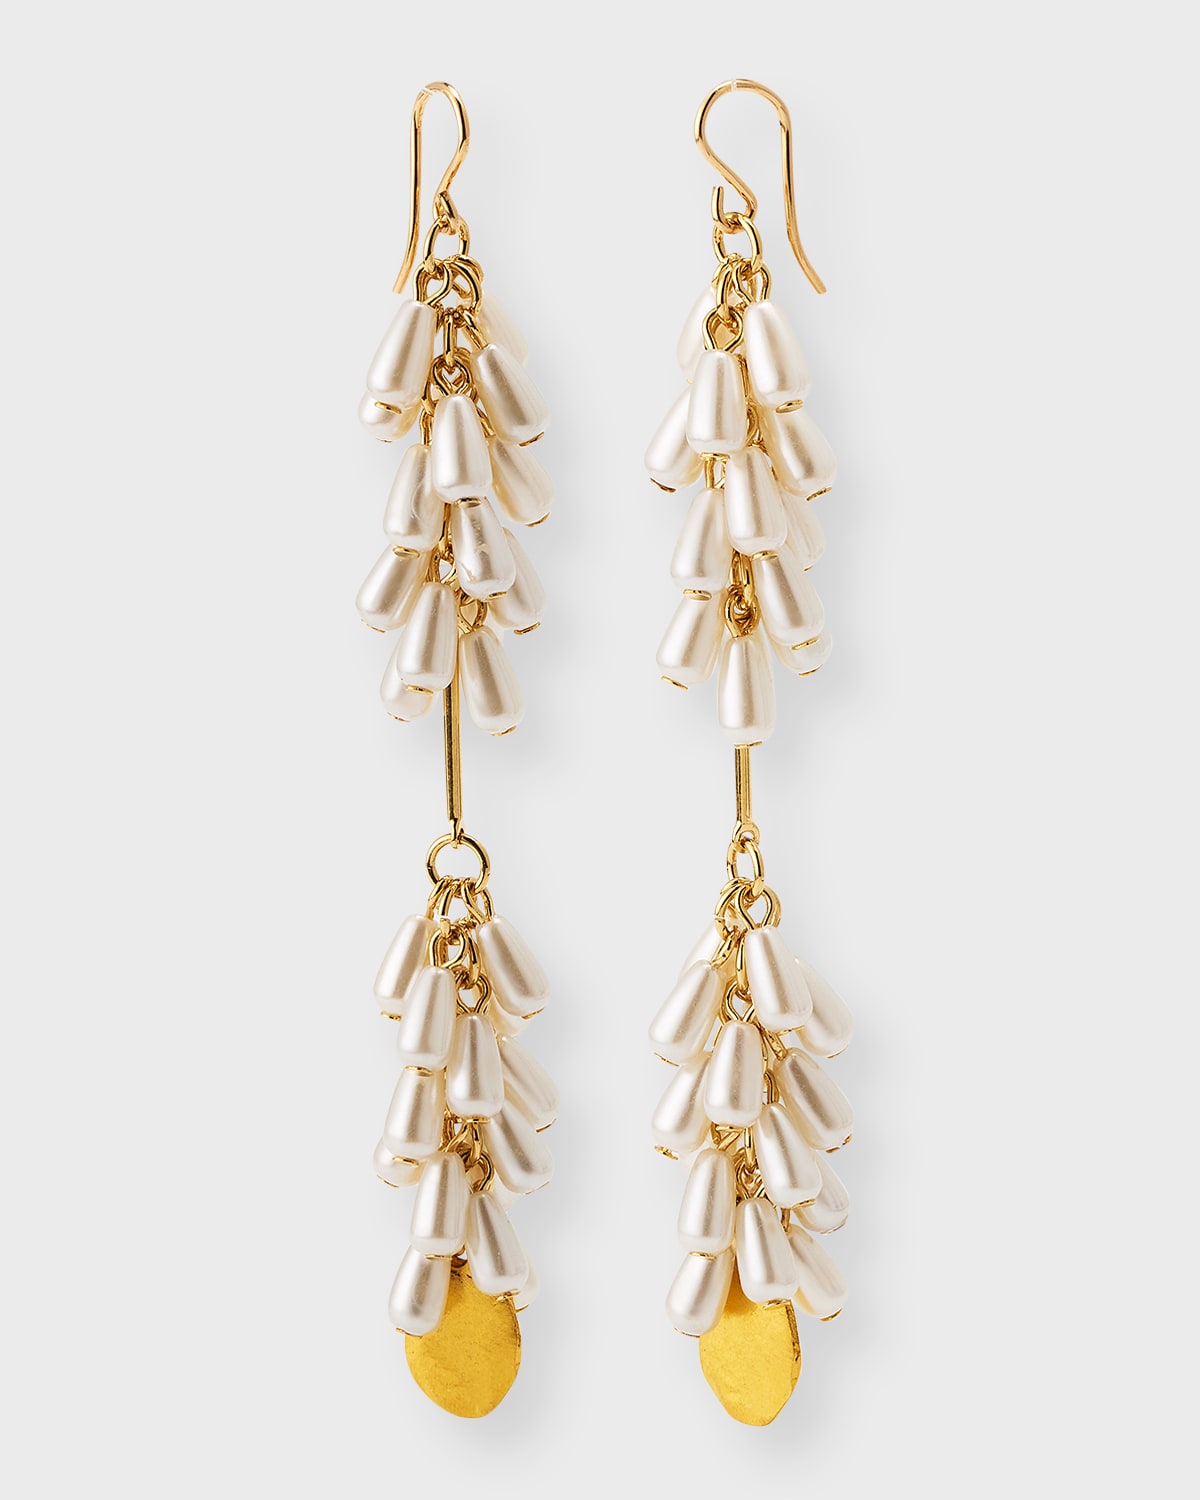 Devon Leigh 18k Gold-plated Faux Pearl Drop Earrings